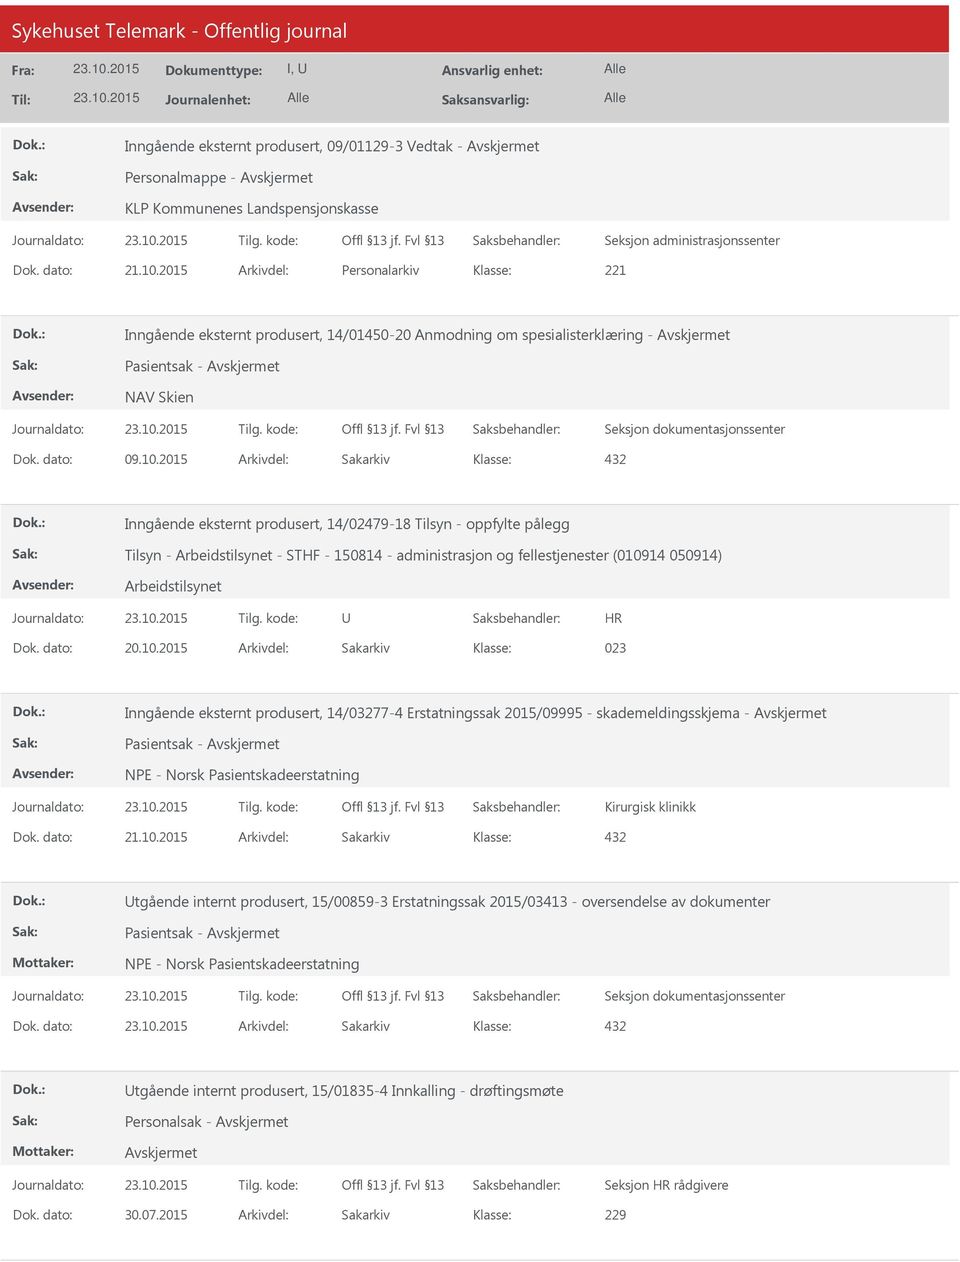 2015 Arkivdel: Sakarkiv Inngående eksternt produsert, 14/02479-18 Tilsyn - oppfylte pålegg Tilsyn - Arbeidstilsynet - STHF - 150814 - administrasjon og fellestjenester (010914 050914) Arbeidstilsynet